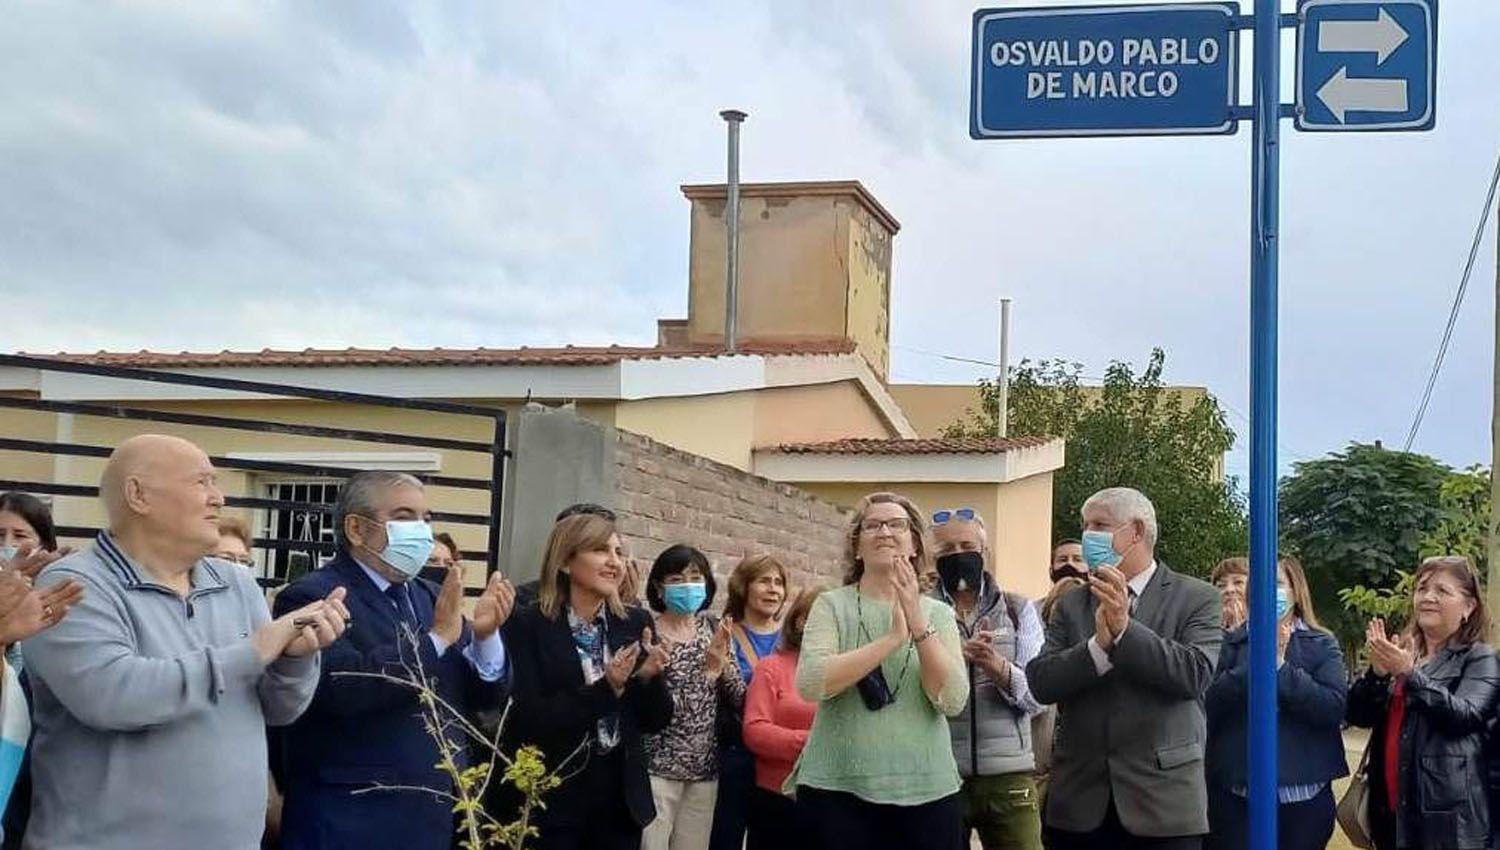 La intendente impuso a una calle el nombre del ex vicecoacutensul de Italia